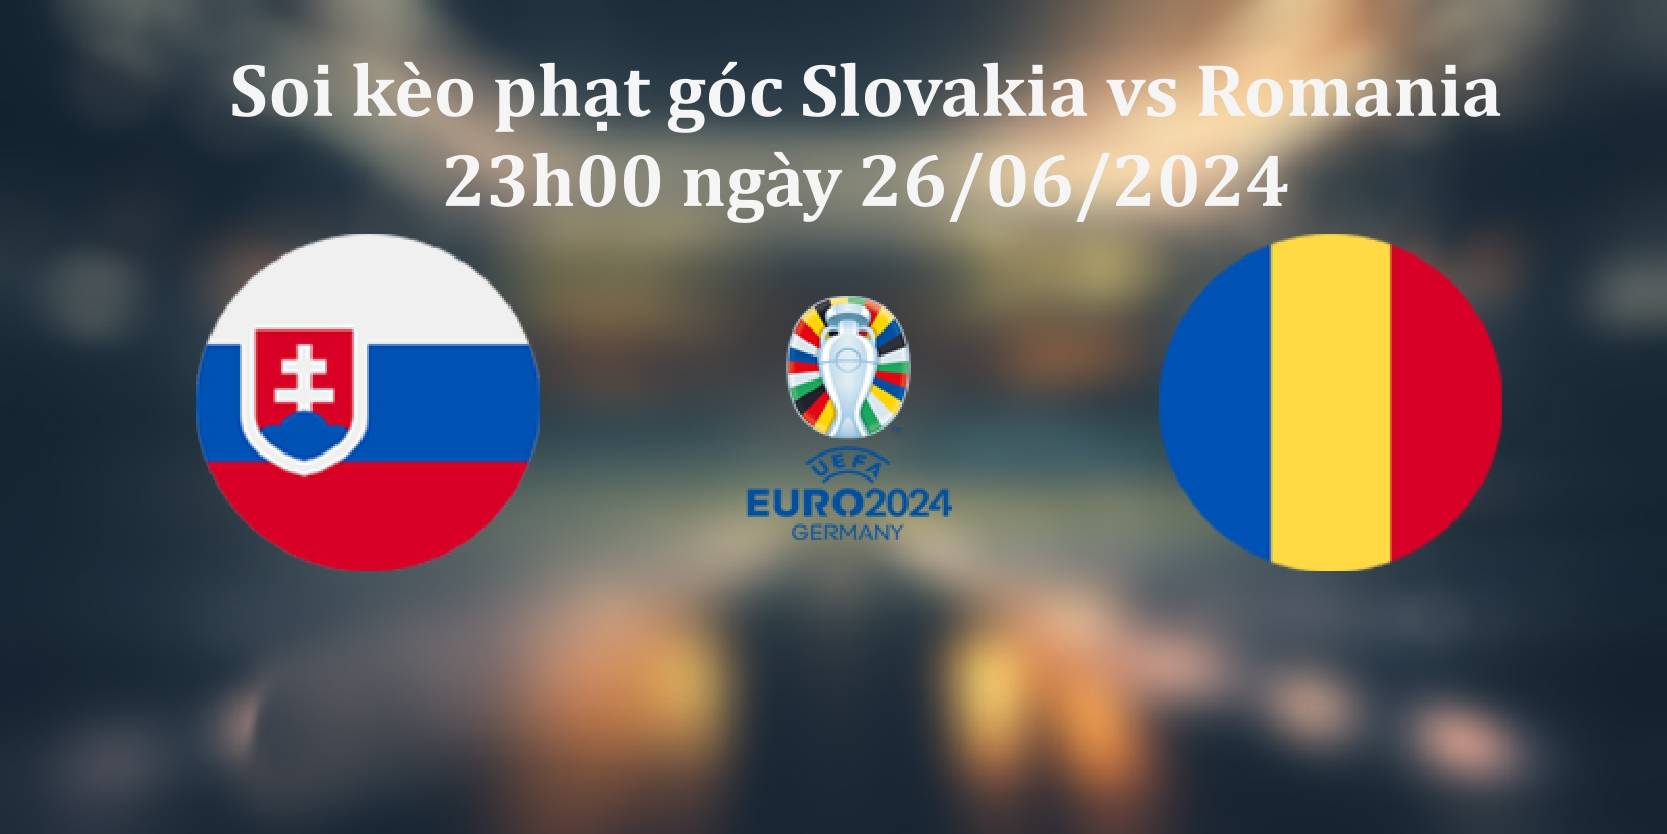 Soi kèo phạt góc Slovakia vs Romania 23h00 ngày 26/06/2024